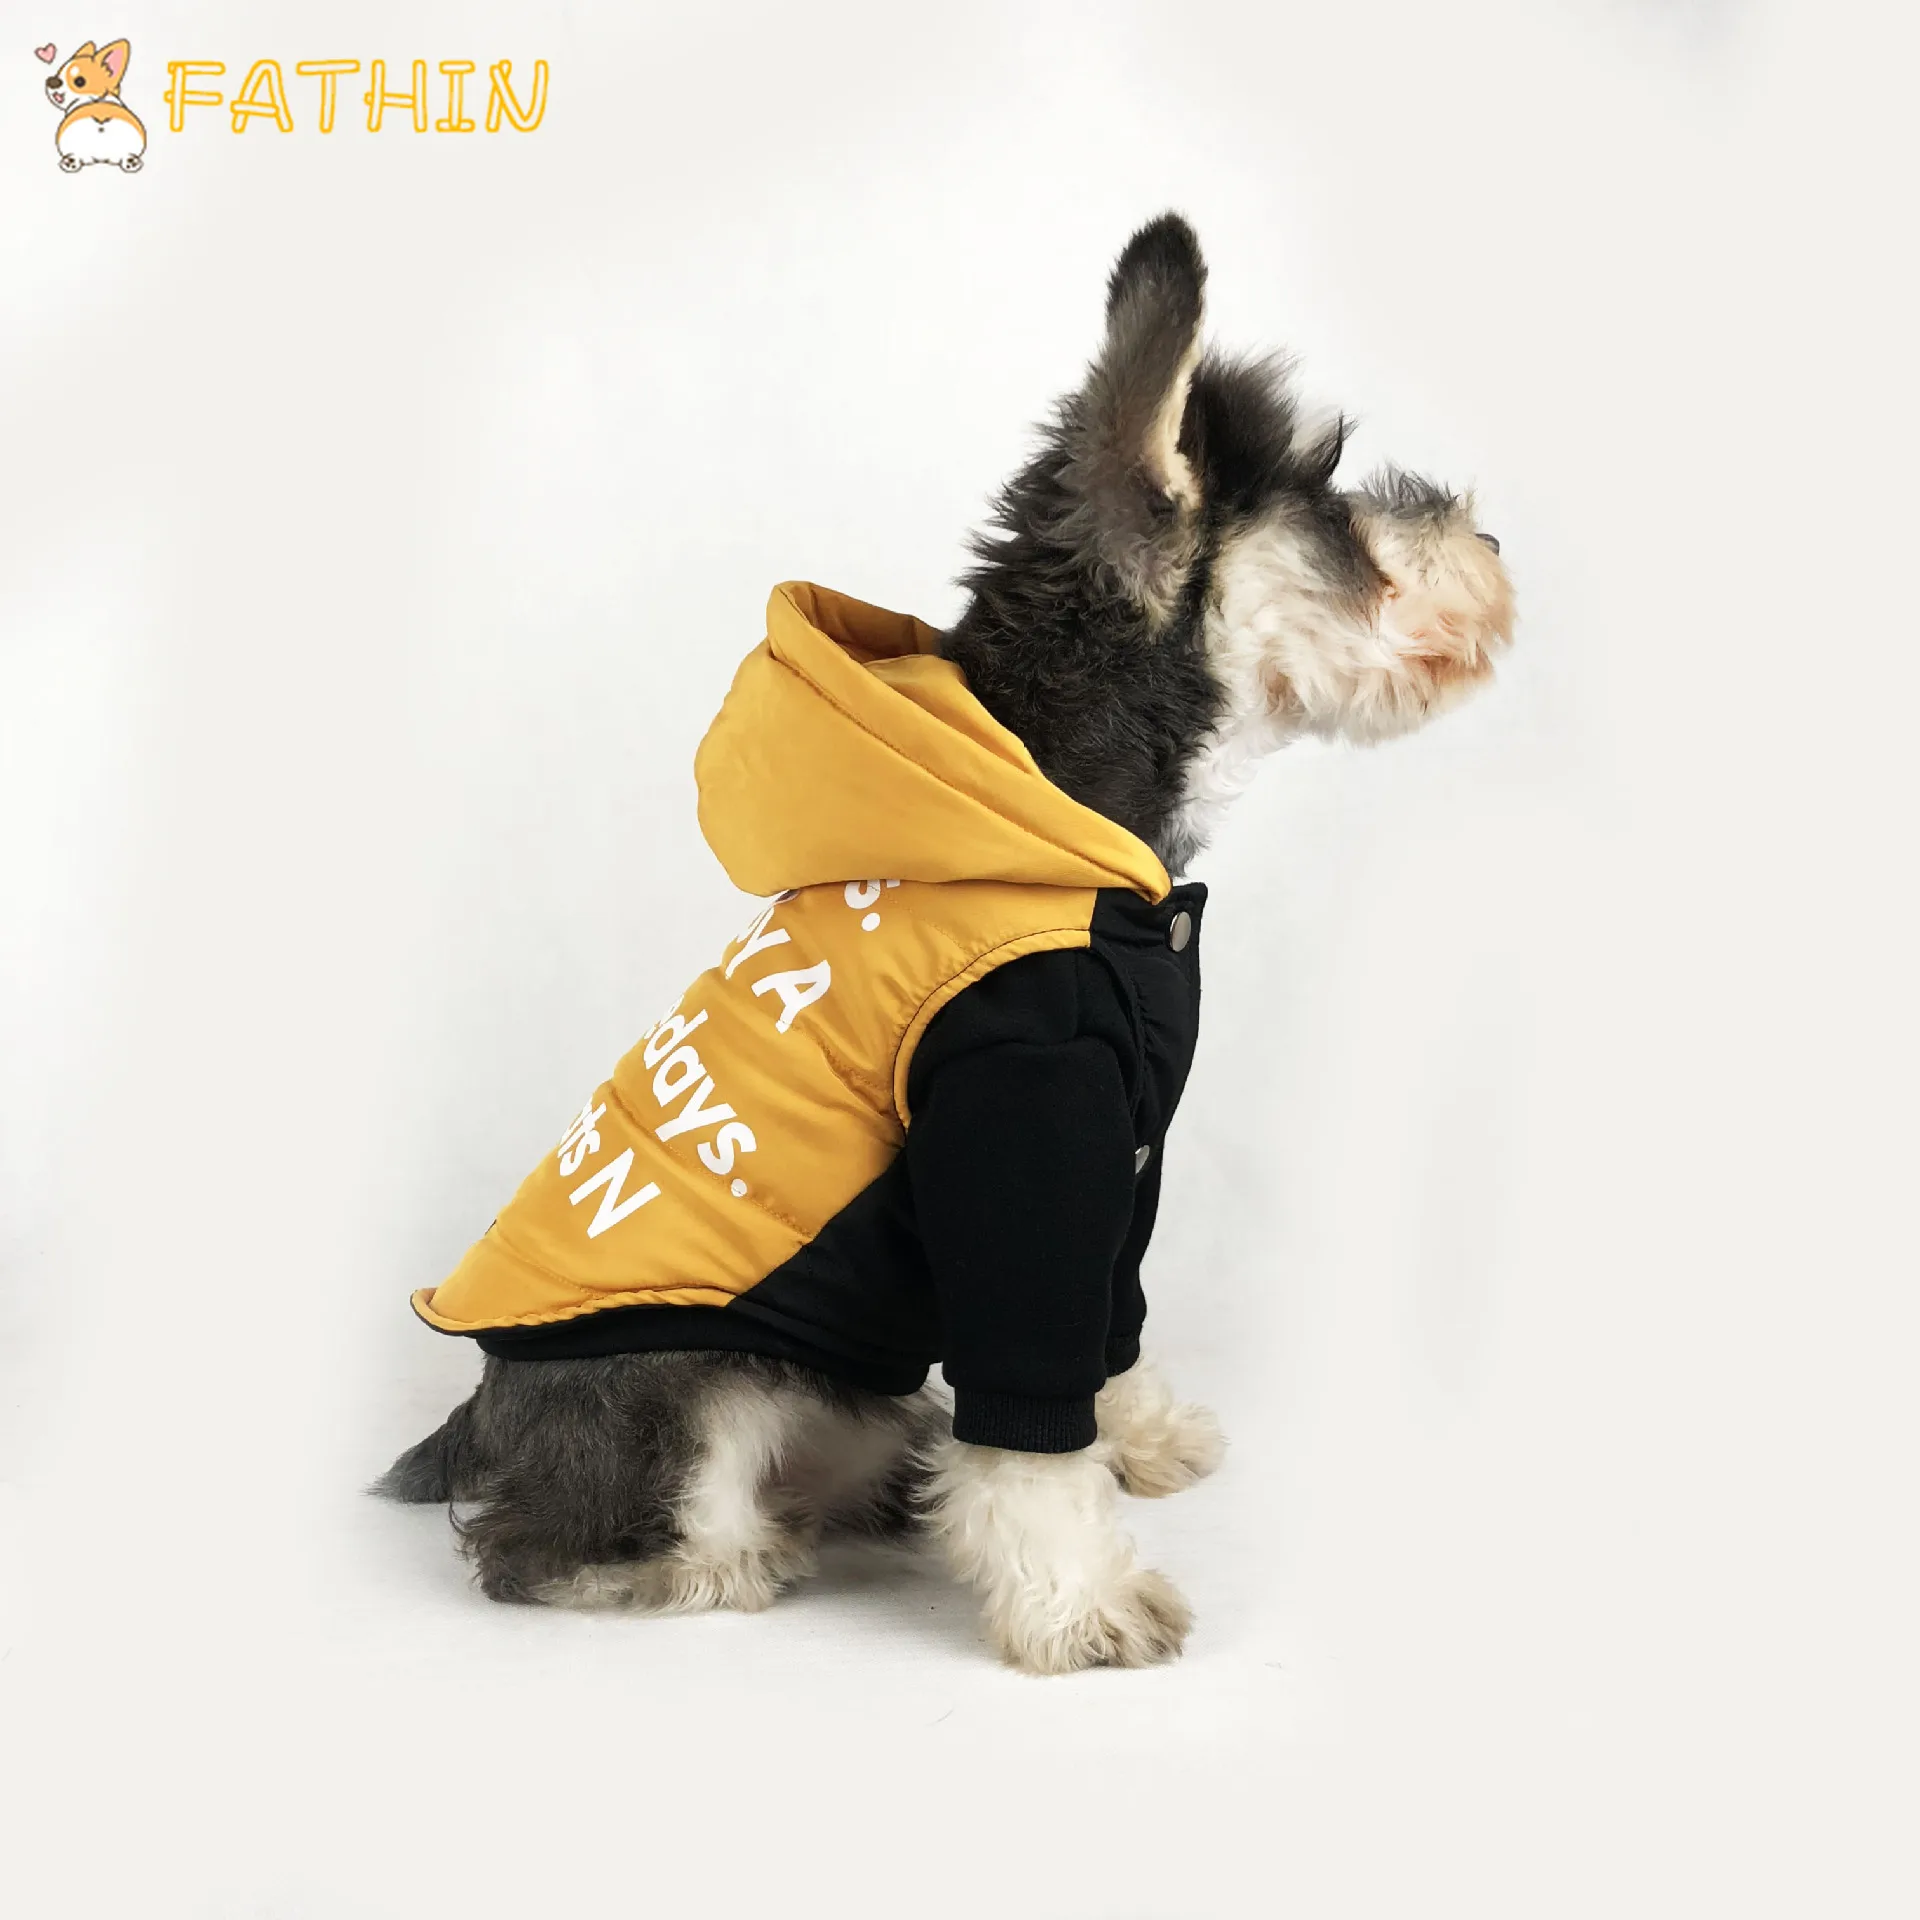 FATHIN Одежда для собак Pupreme pawmaster Pet французская футболка с бульдогом свитер для собак спортивный Ретро Чихуахуа кошка одежда для домашних животных s-xxl